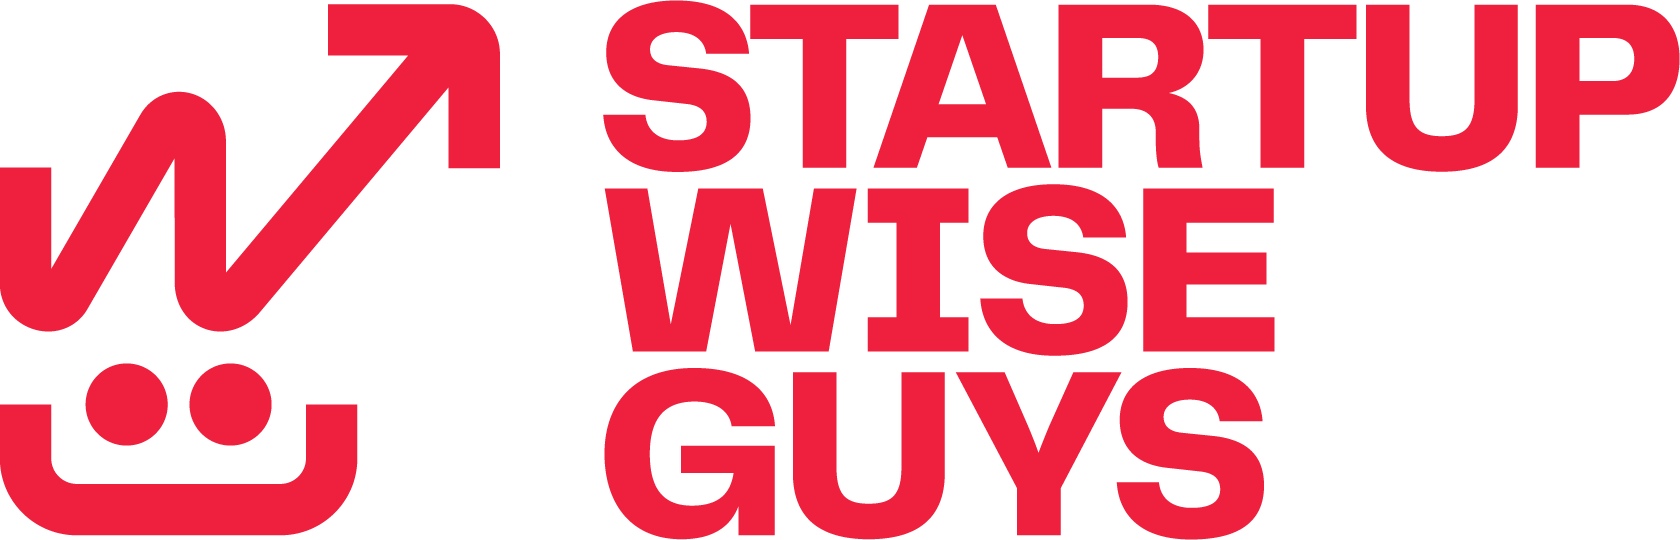 Startup Wise Guys Logo